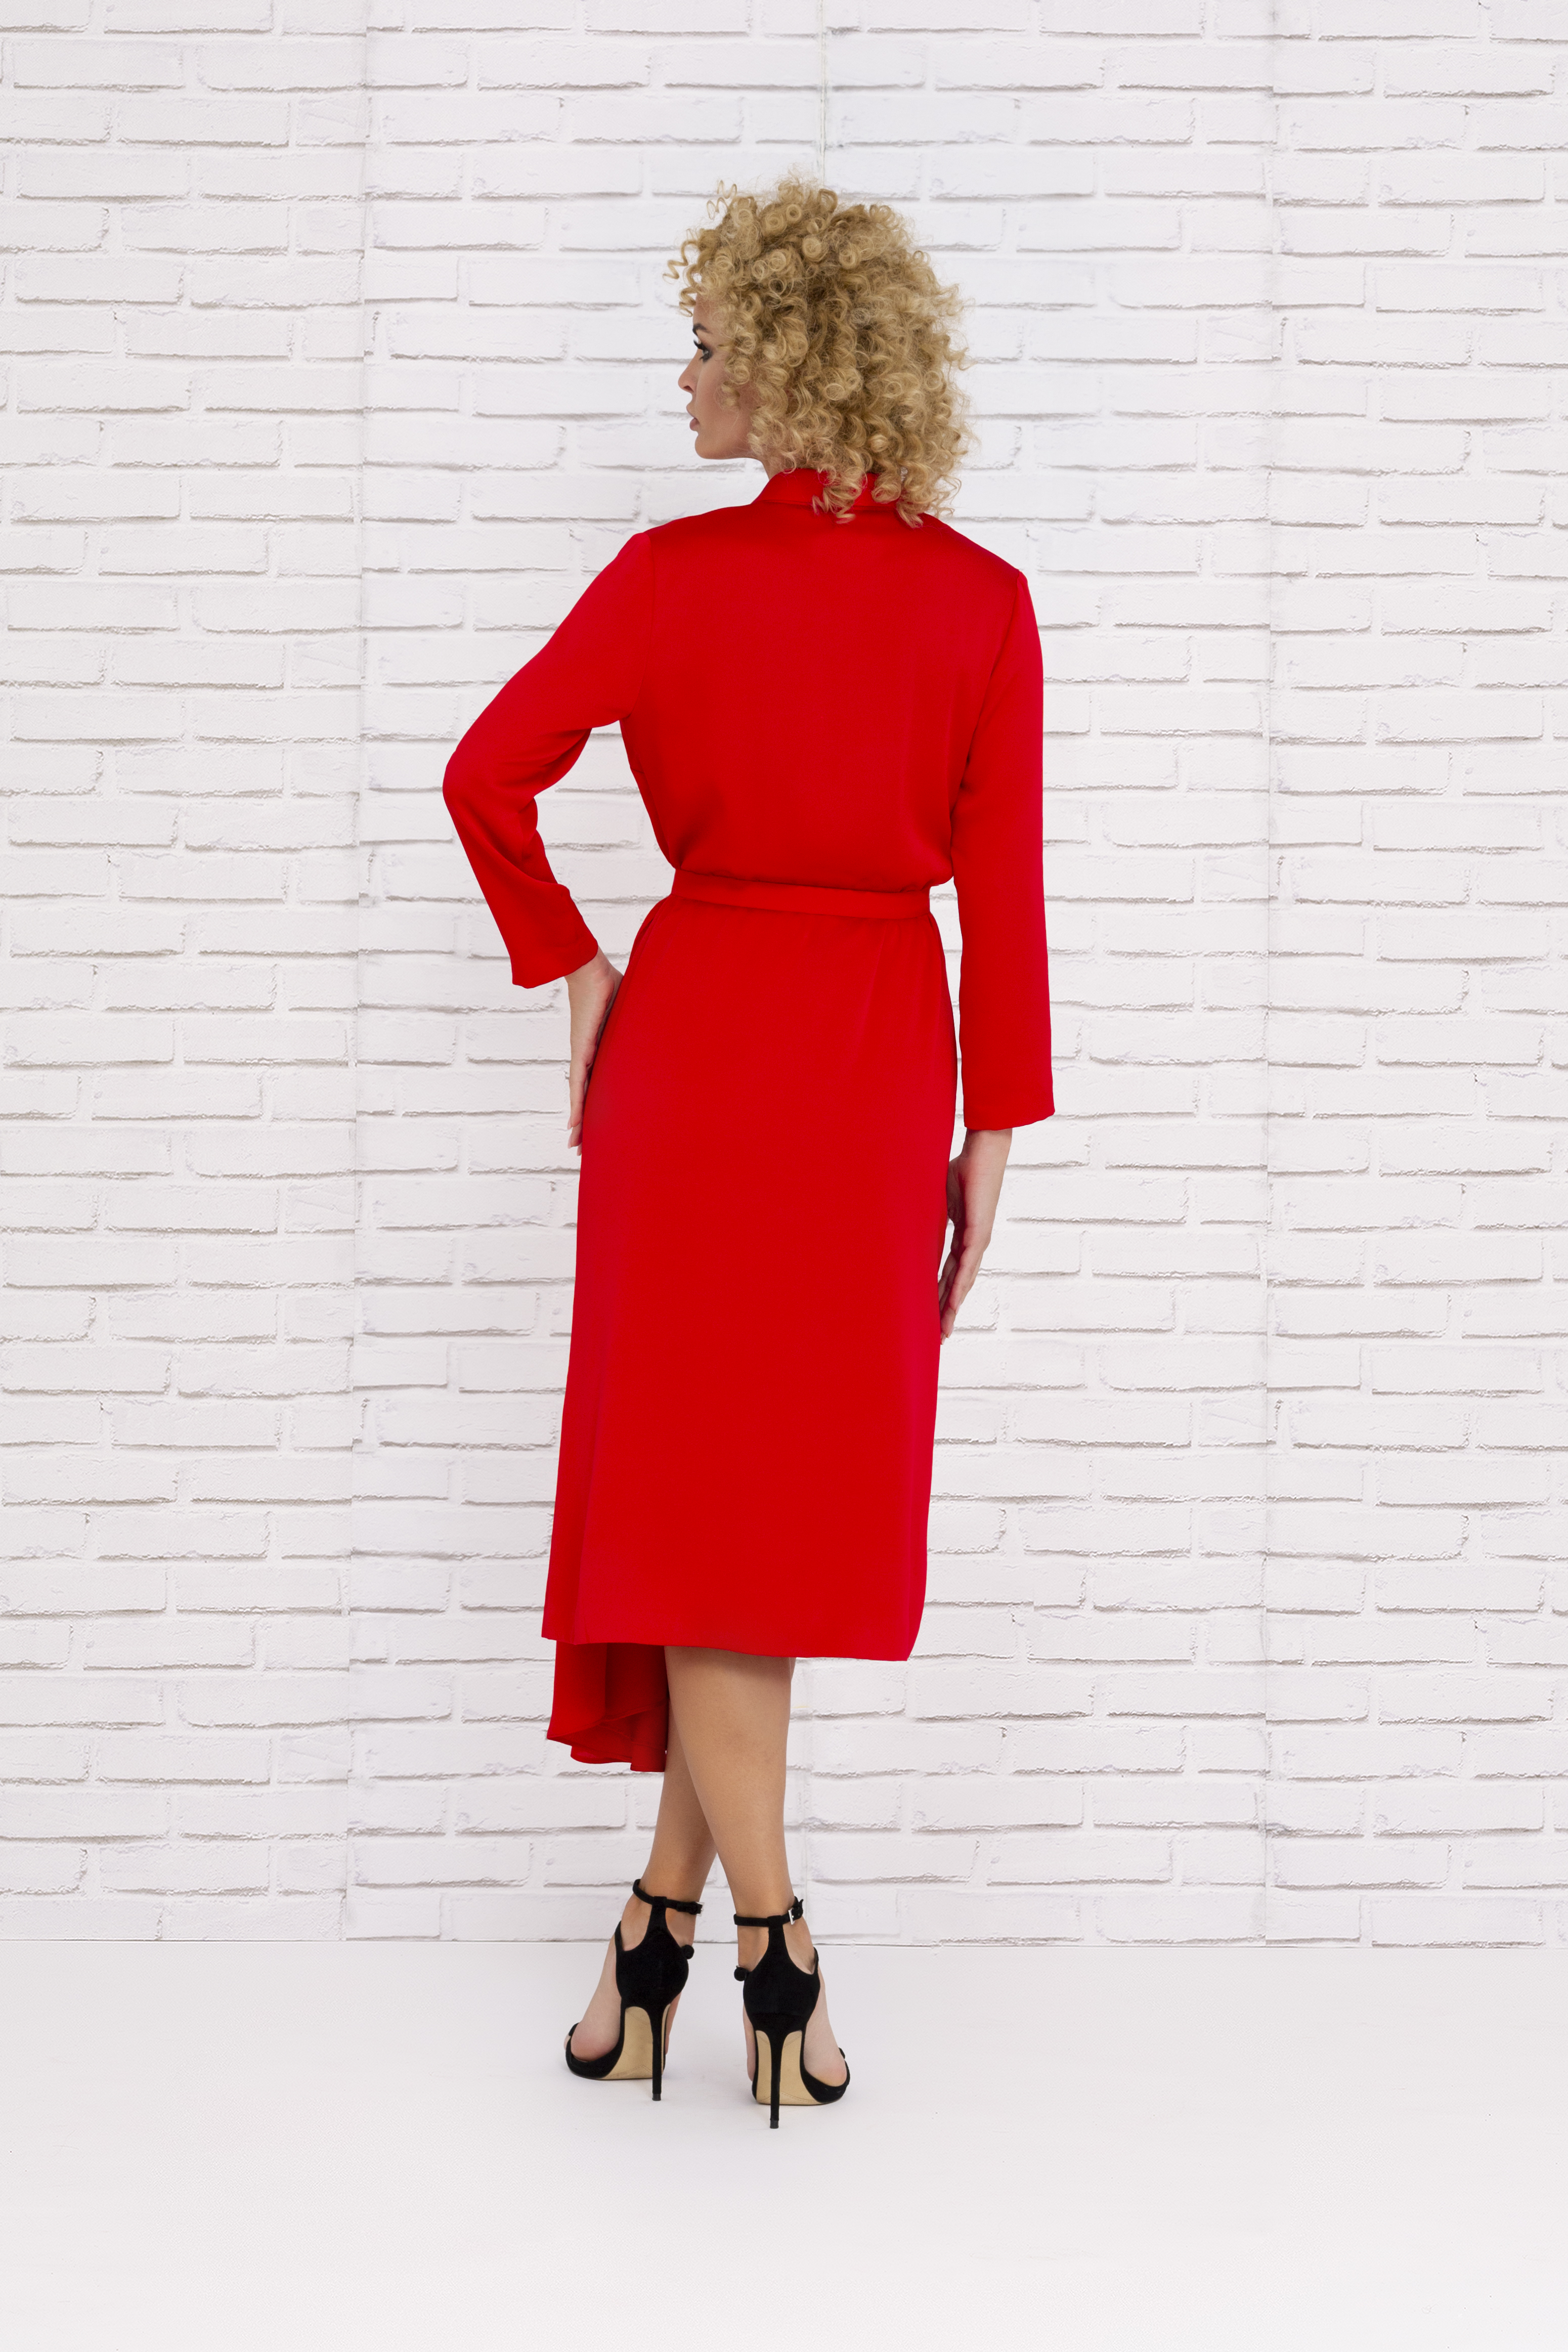 Vestido rojo de fiesta con corte asimétrico y mangas 2020